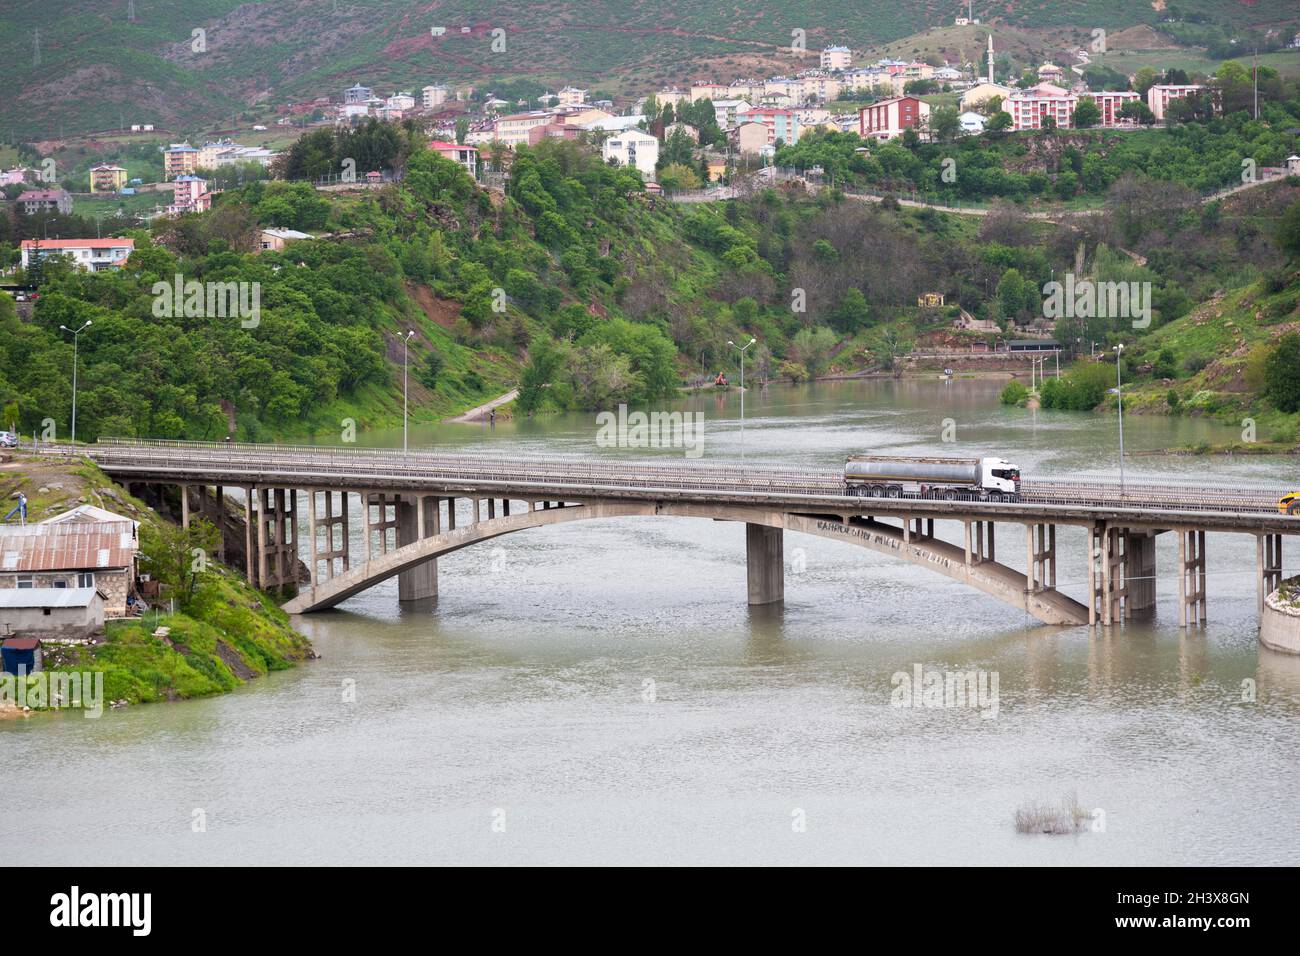 Landscape of Tunceli city, Tunceli bridge and Munzur River in eastern Turkey. Stock Photo